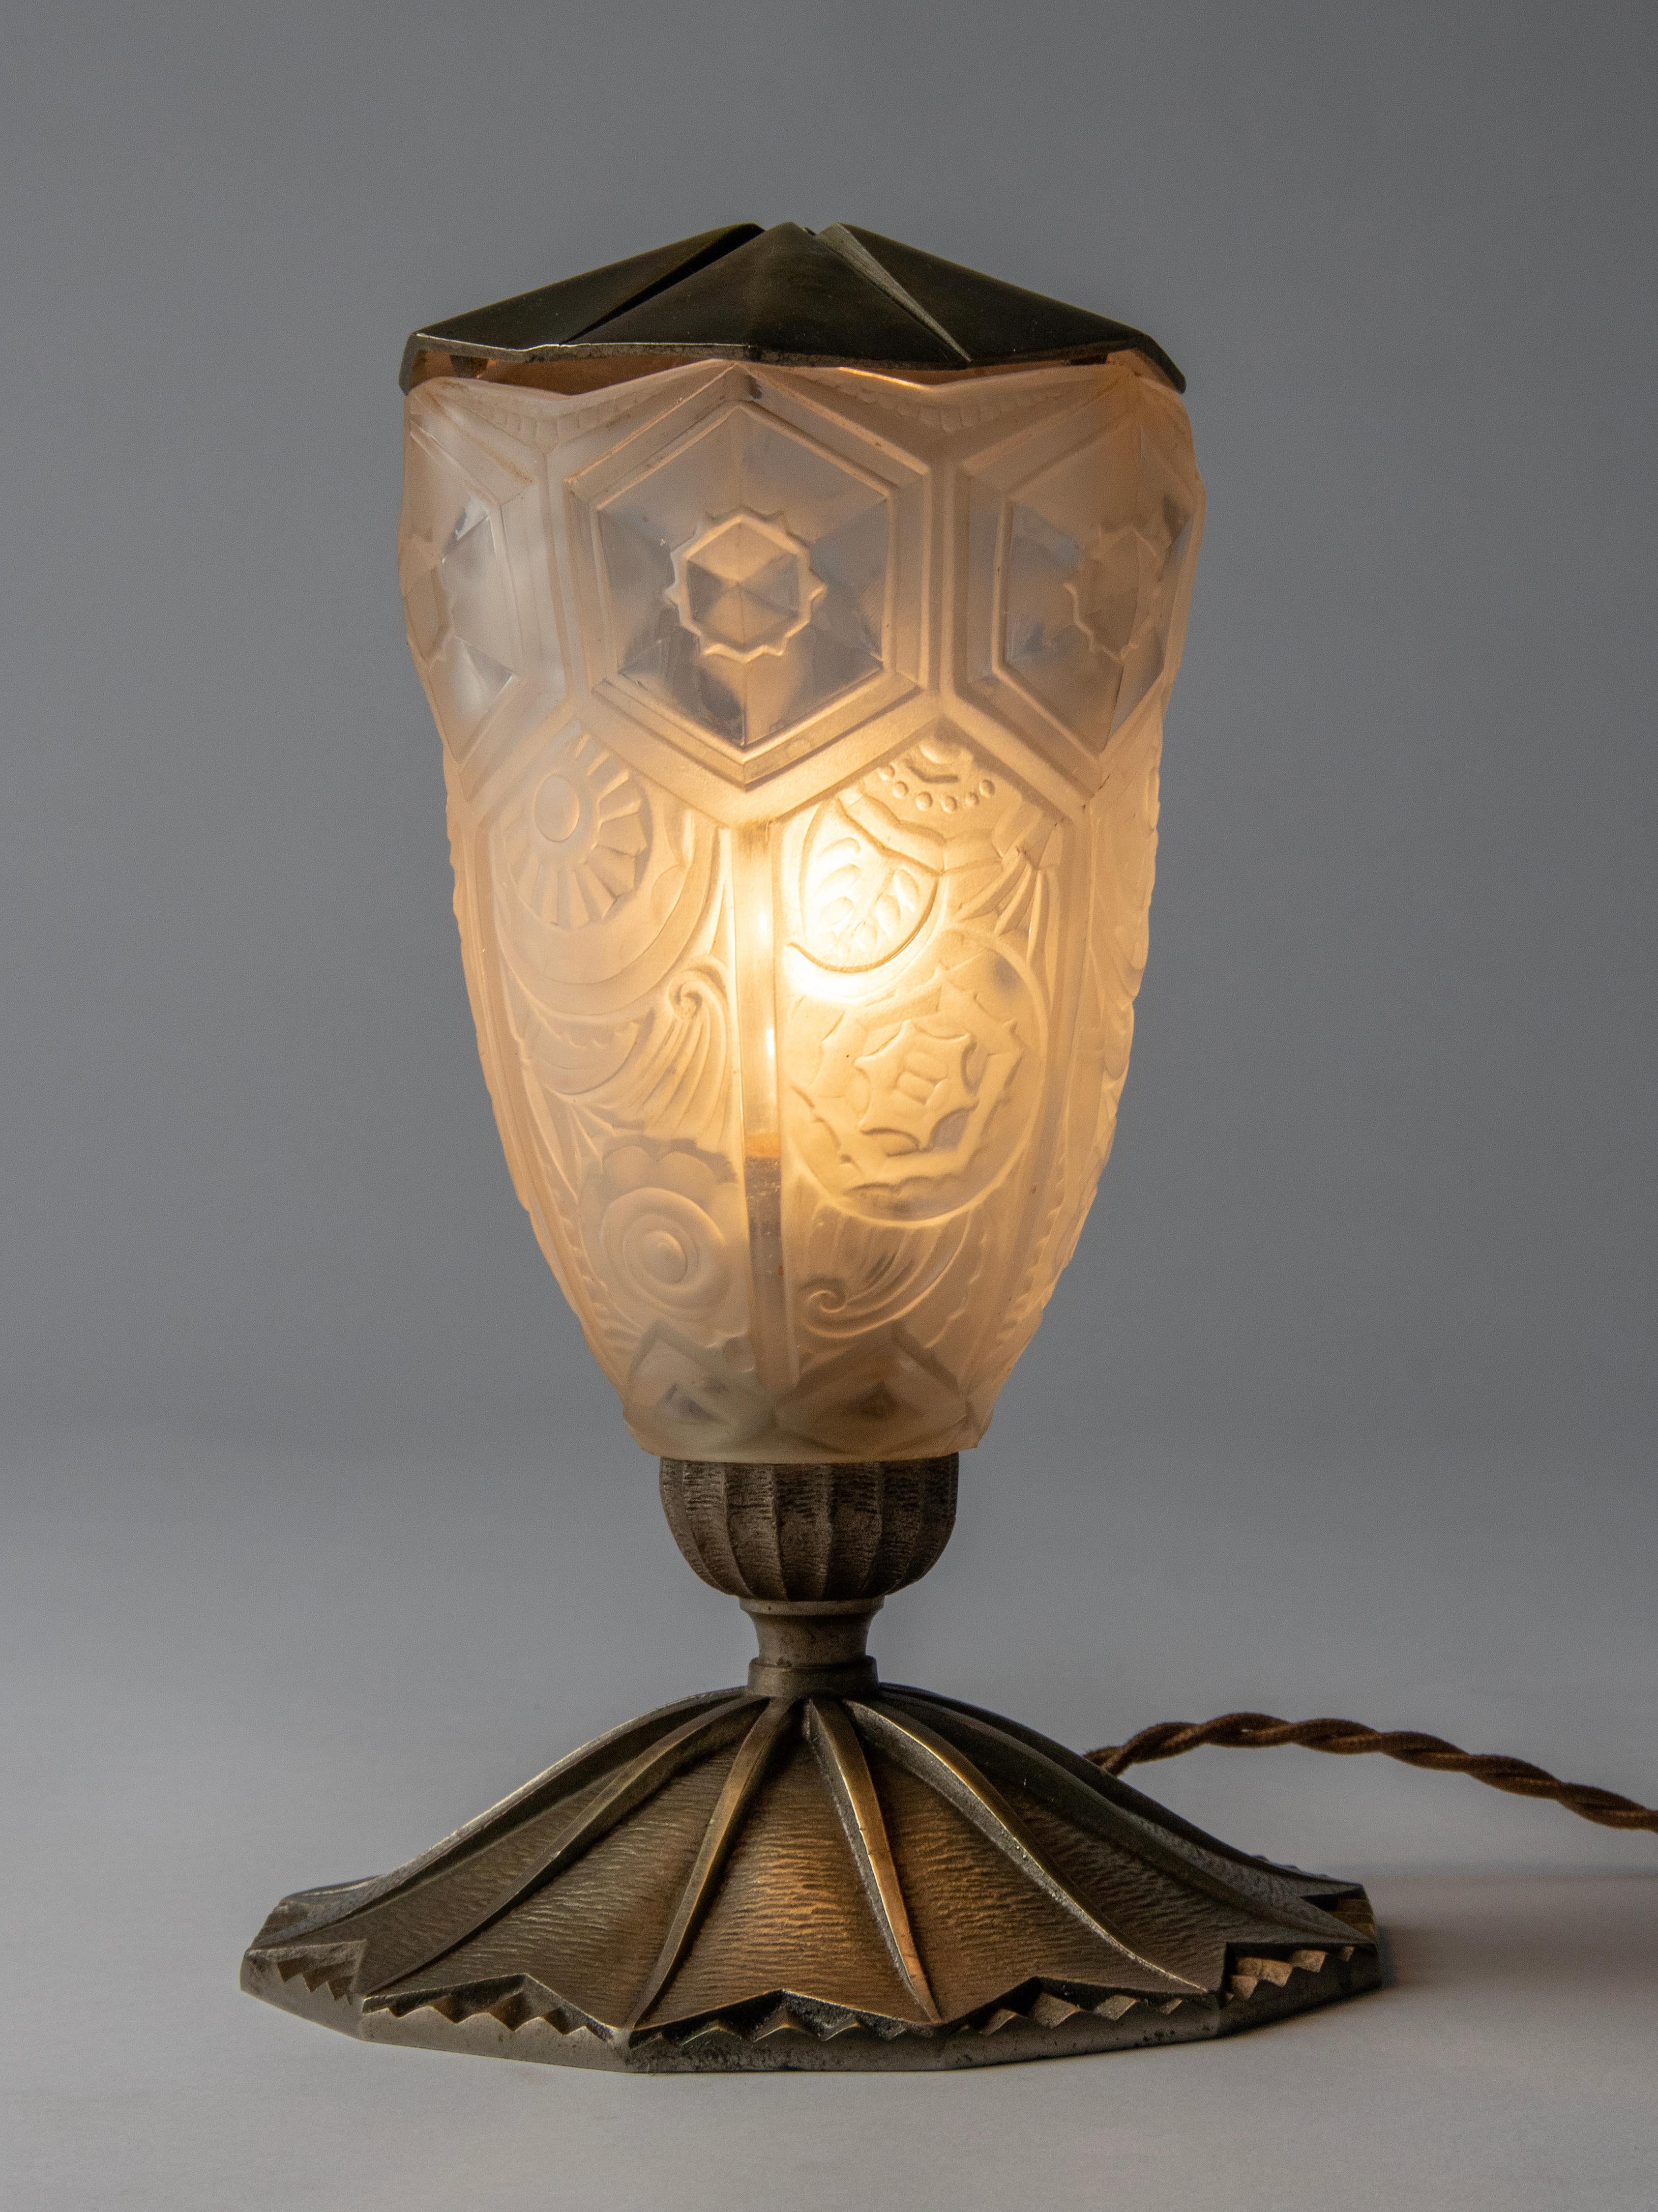 Une élégante lampe de table Art déco de la période Art déco française. Le pied et le couvercle sont en laiton nickelé. L'abat-jour est en verre moulé givré transparent avec des motifs floraux.
La lampe est en état de marche, elle possède le câblage